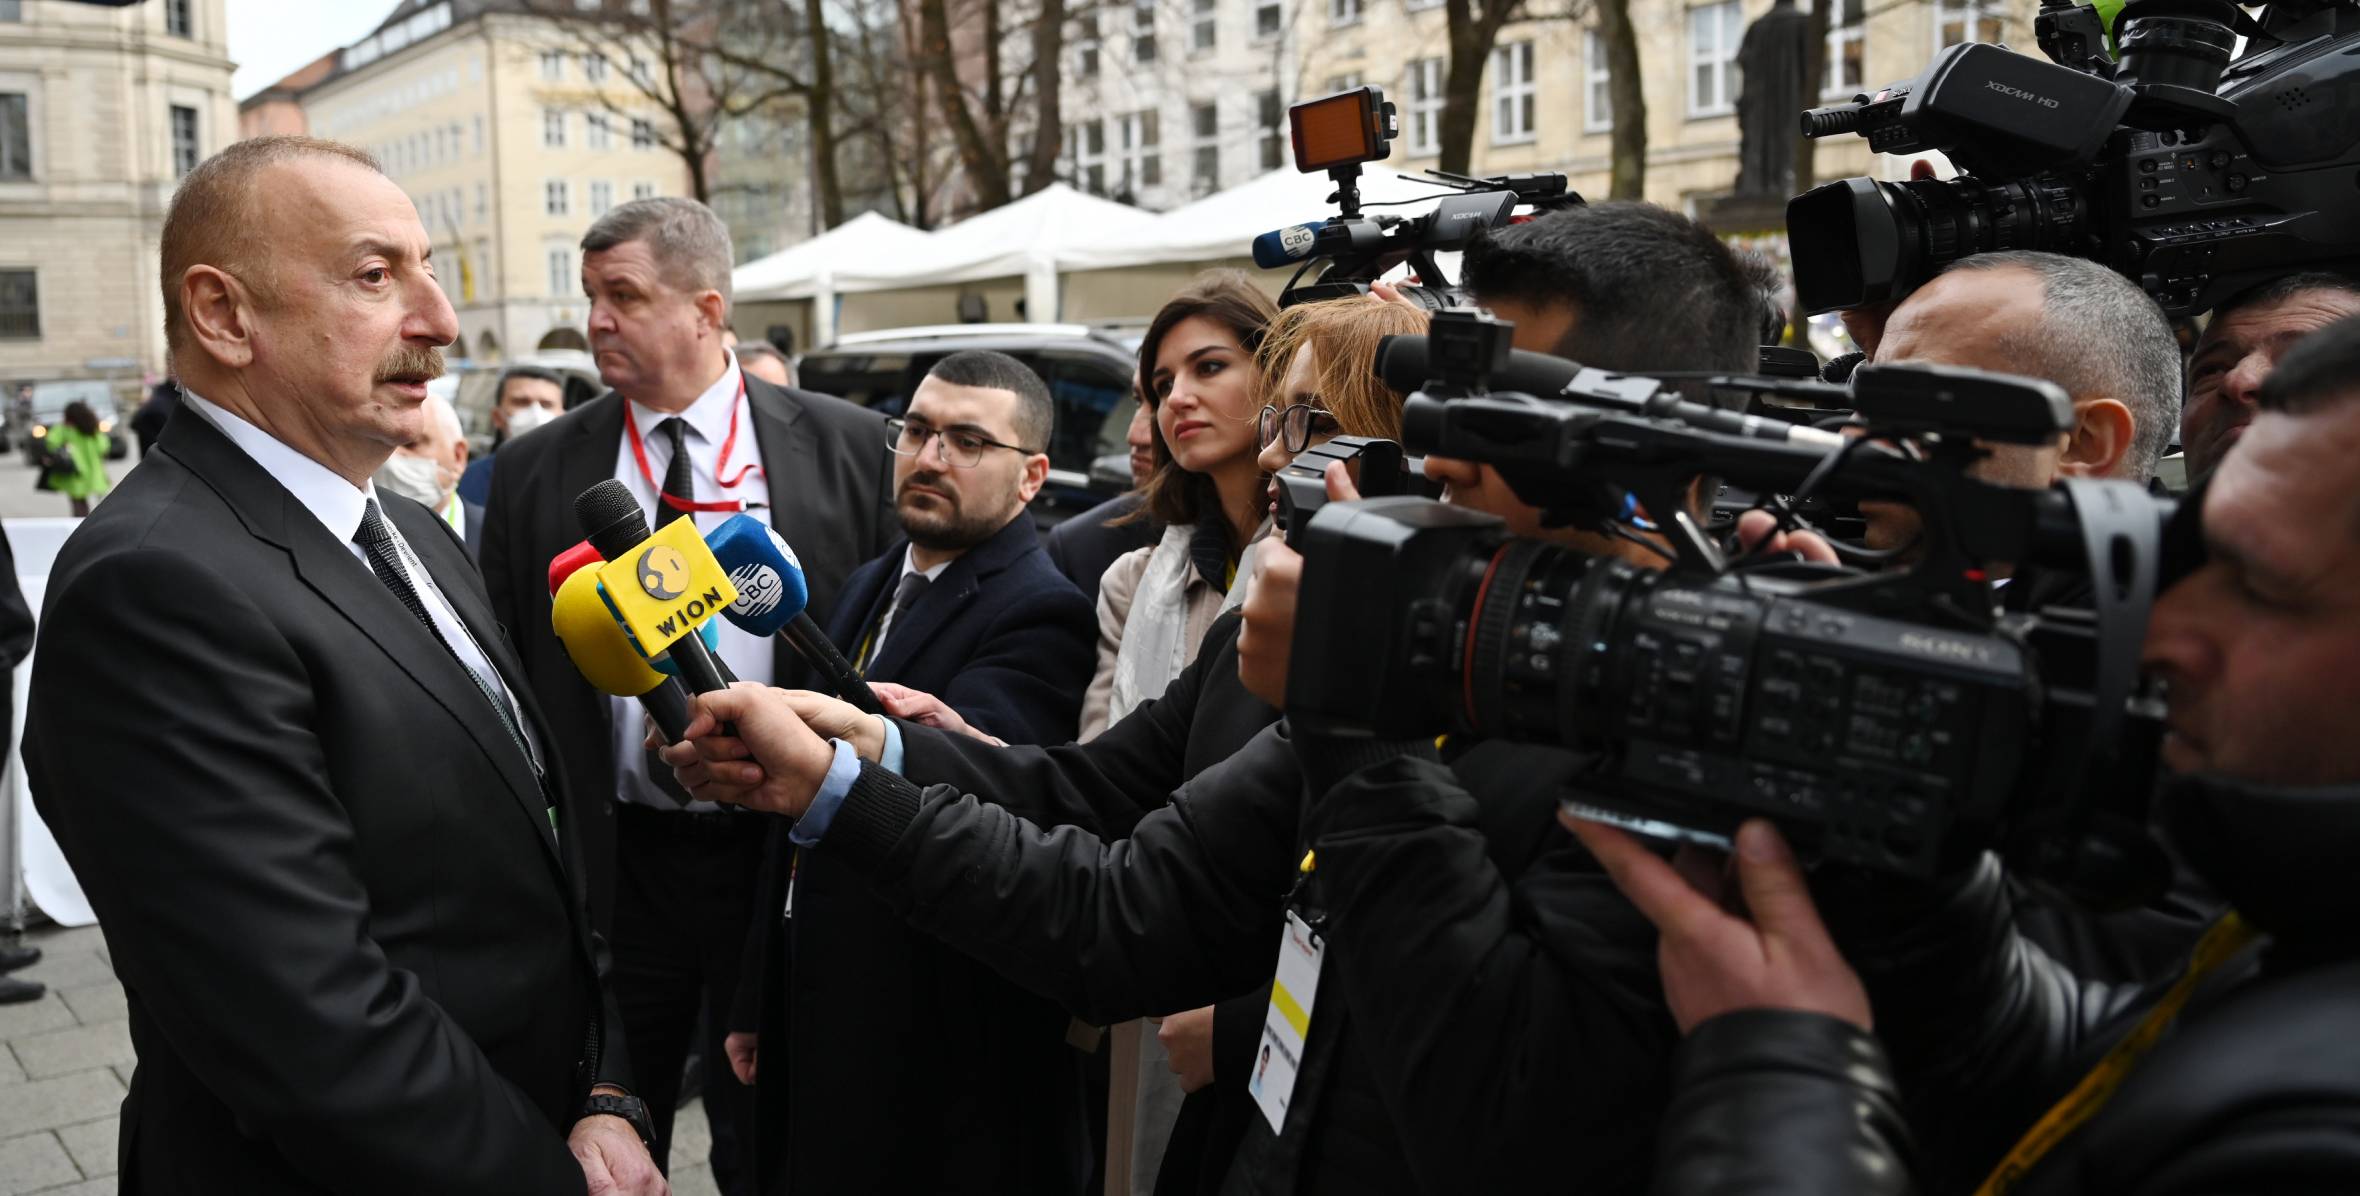 Ilham Aliyev was interviewed by TV channels in Munich